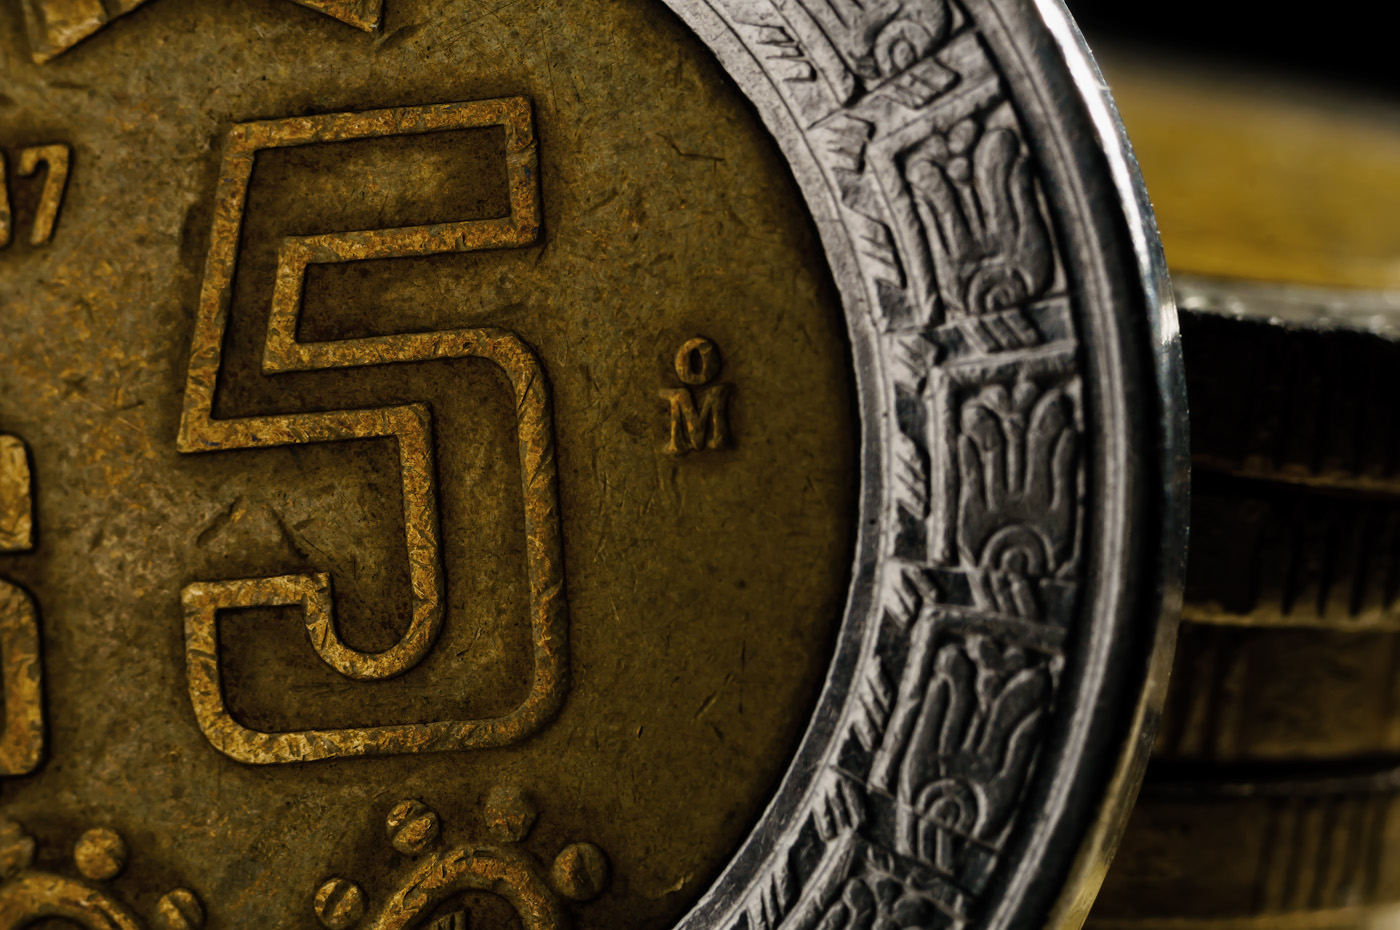 26. Съёмка частей монеты крупным планом. Эти 5 мексиканских песо смотрятся живее из-за бликов в правом верхнем углу от вспышки, размещенной позади монеты.